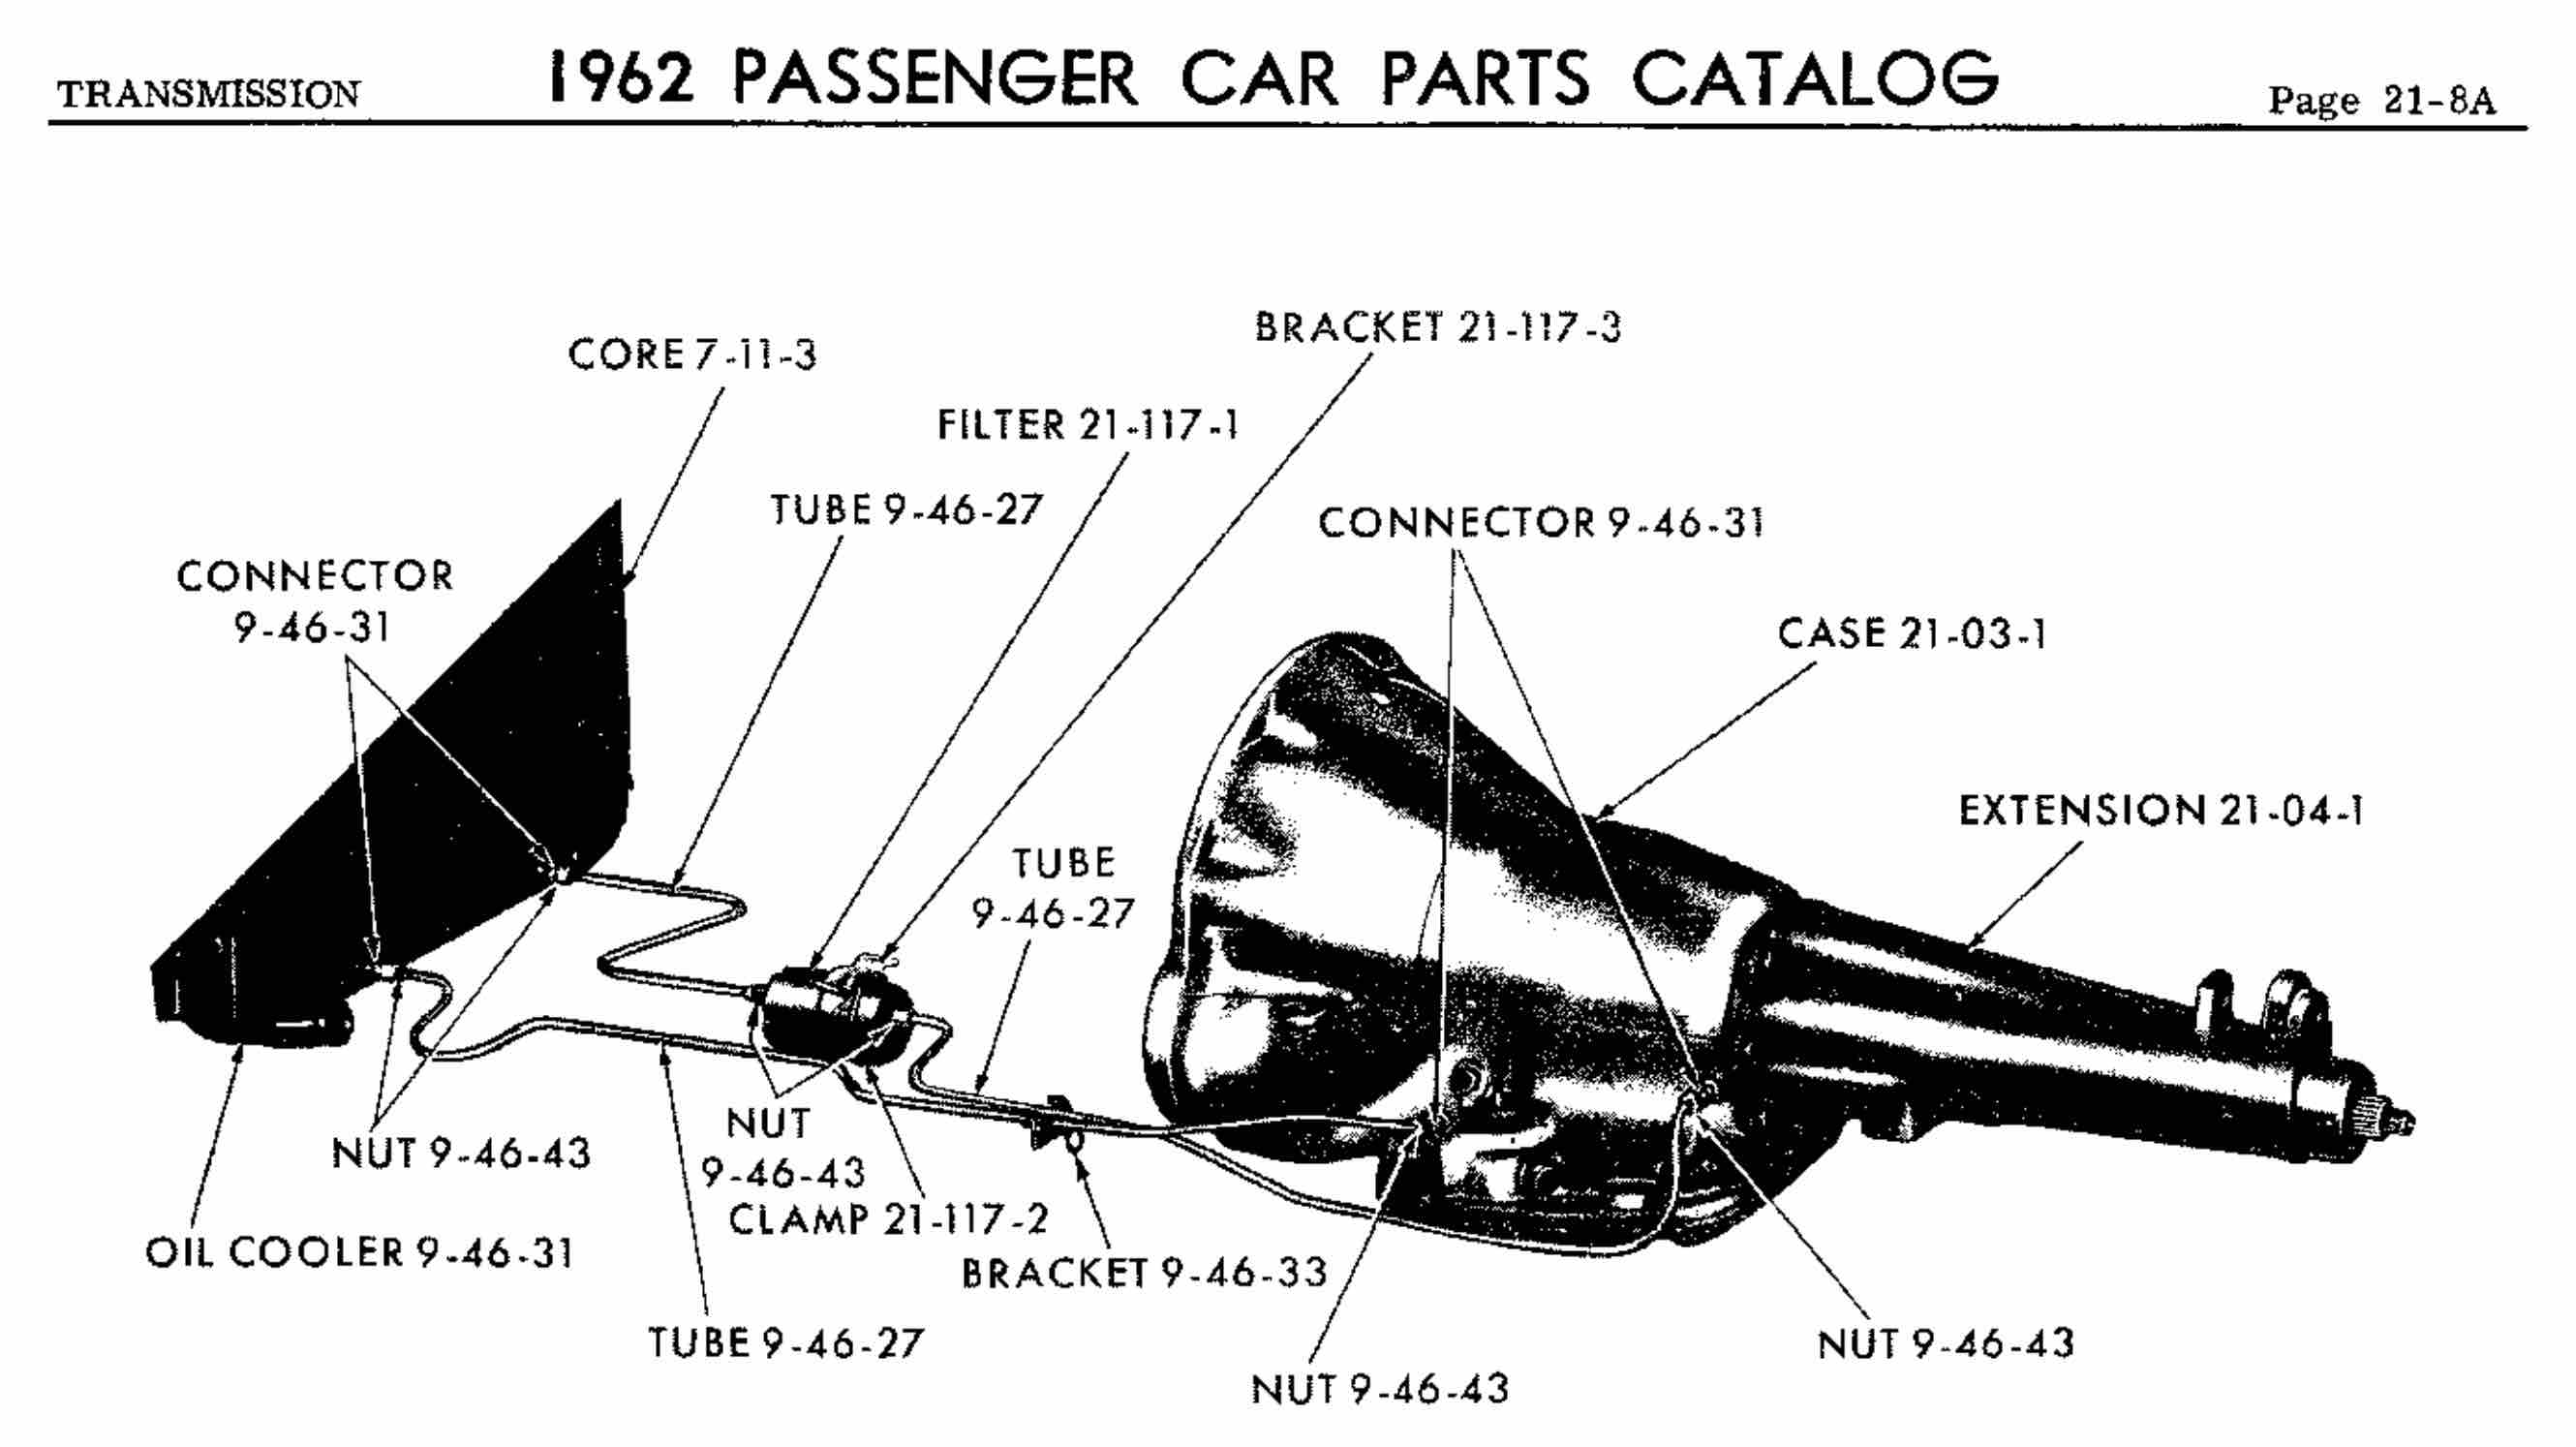 1962 chrysler transmission.jpg